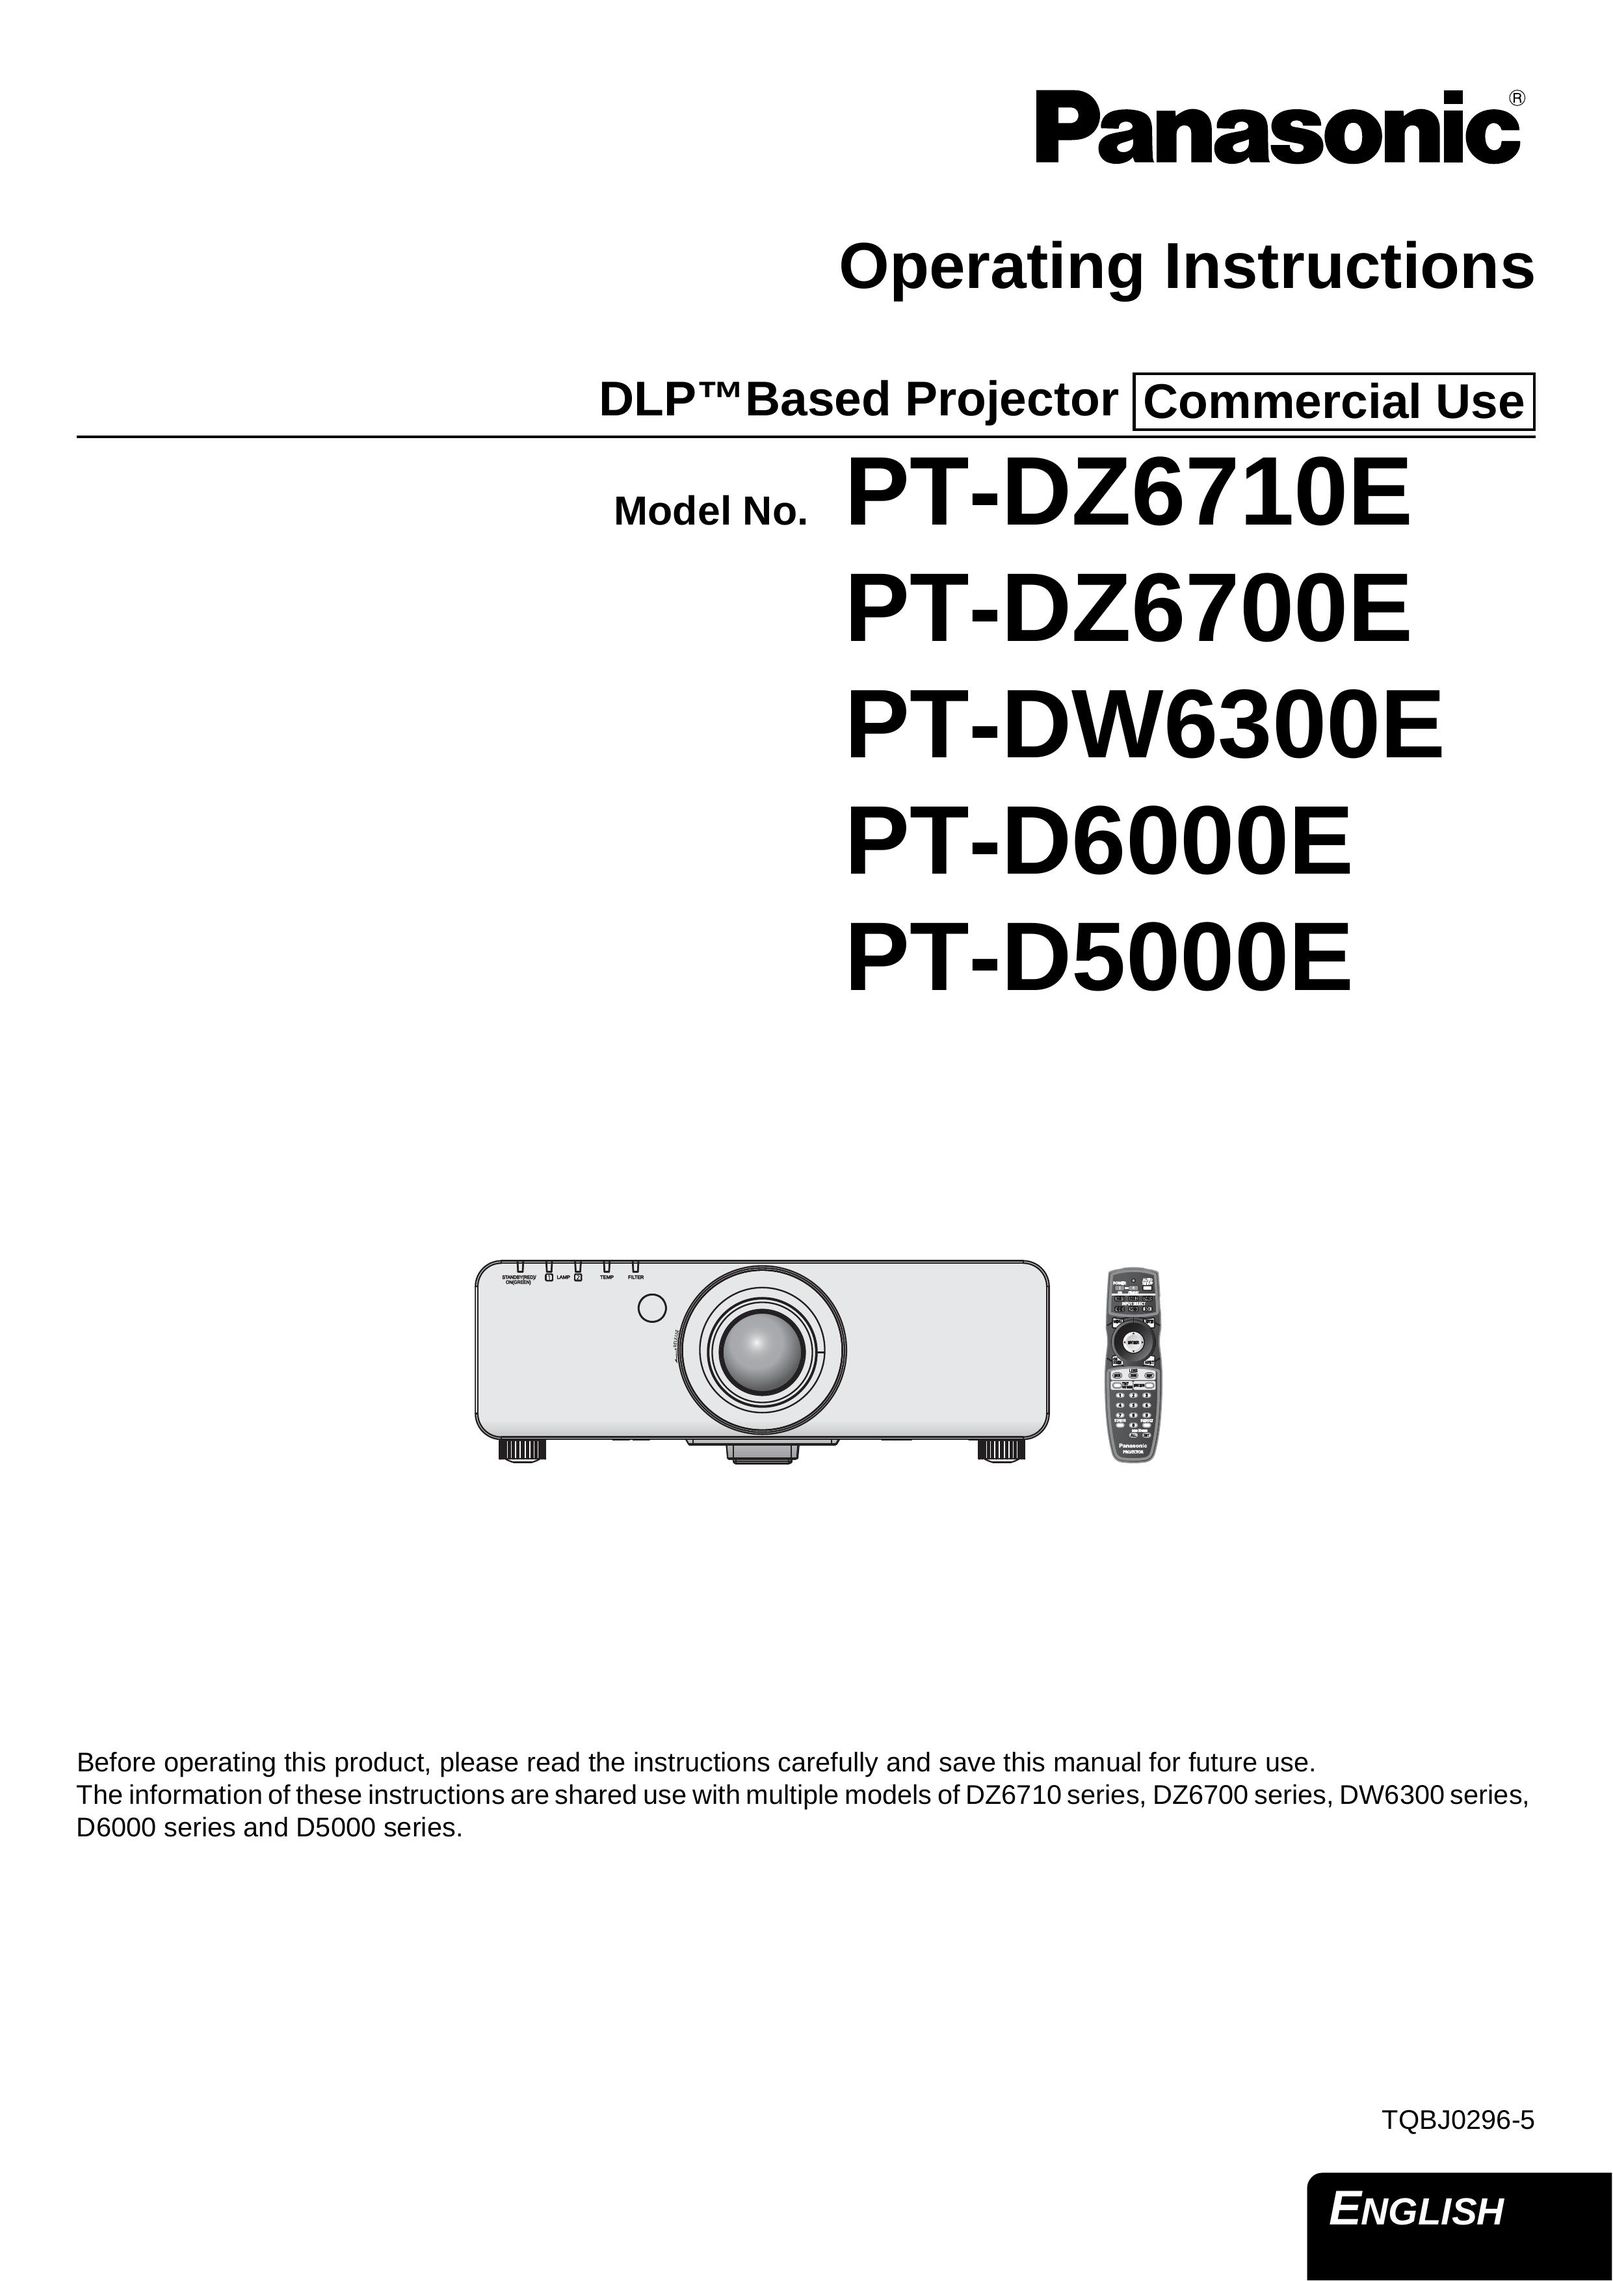 Panasonic D6KE Projector User Manual